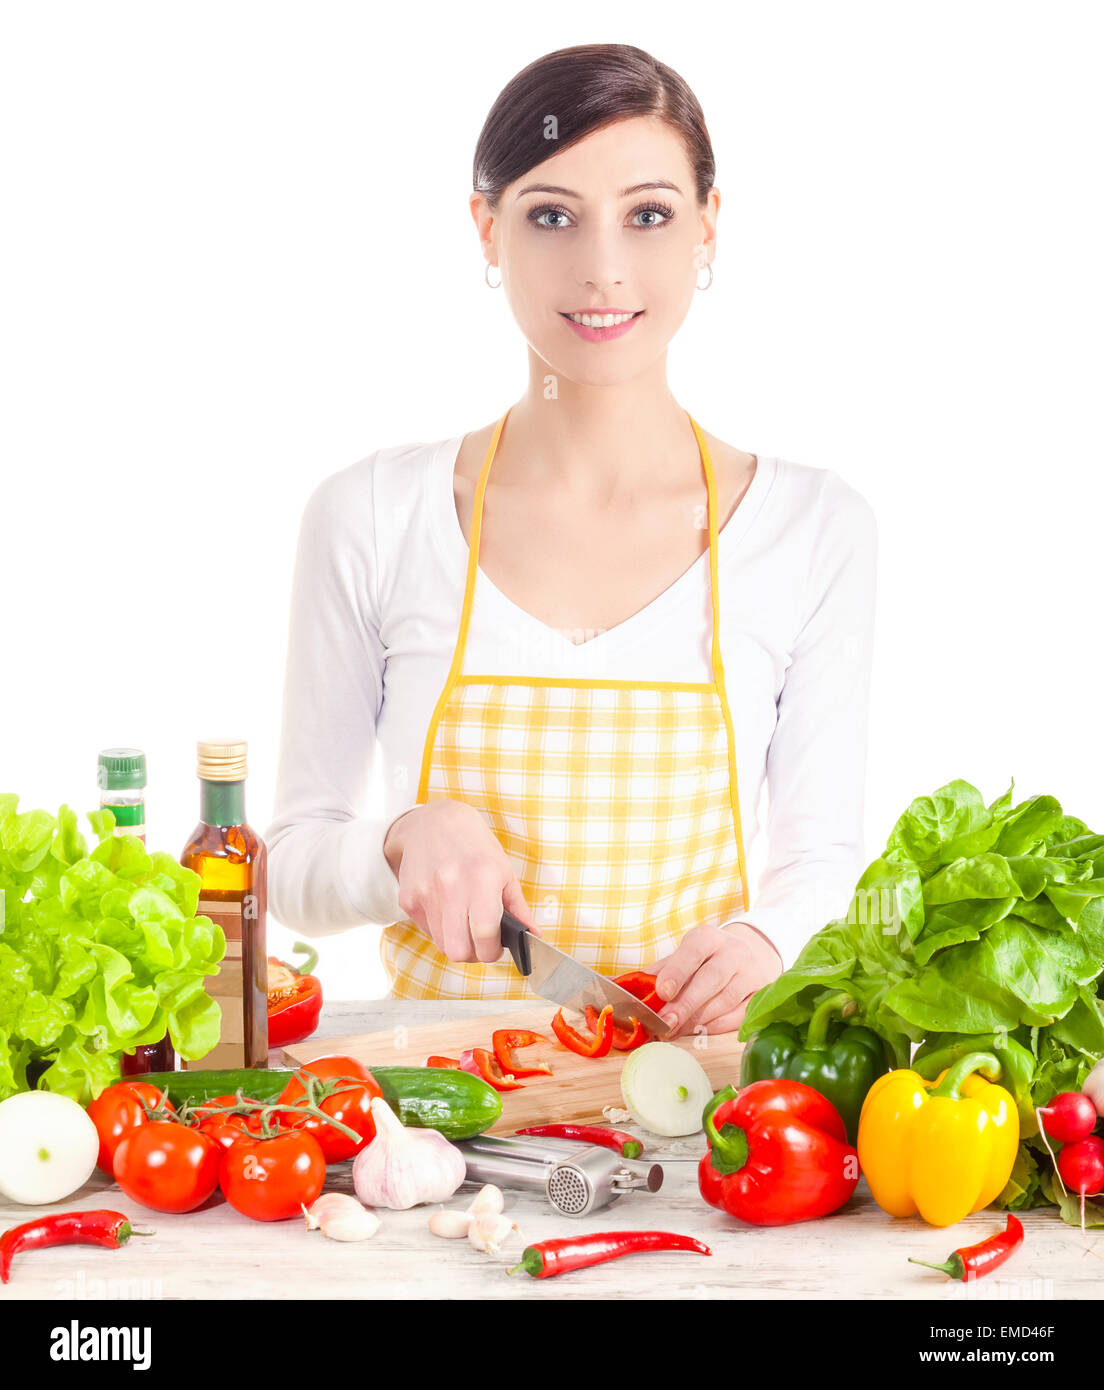 Smiling woman preparing salad. L'alimentation saine et l'alimentation de concept. Isolé sur blanc. Banque D'Images